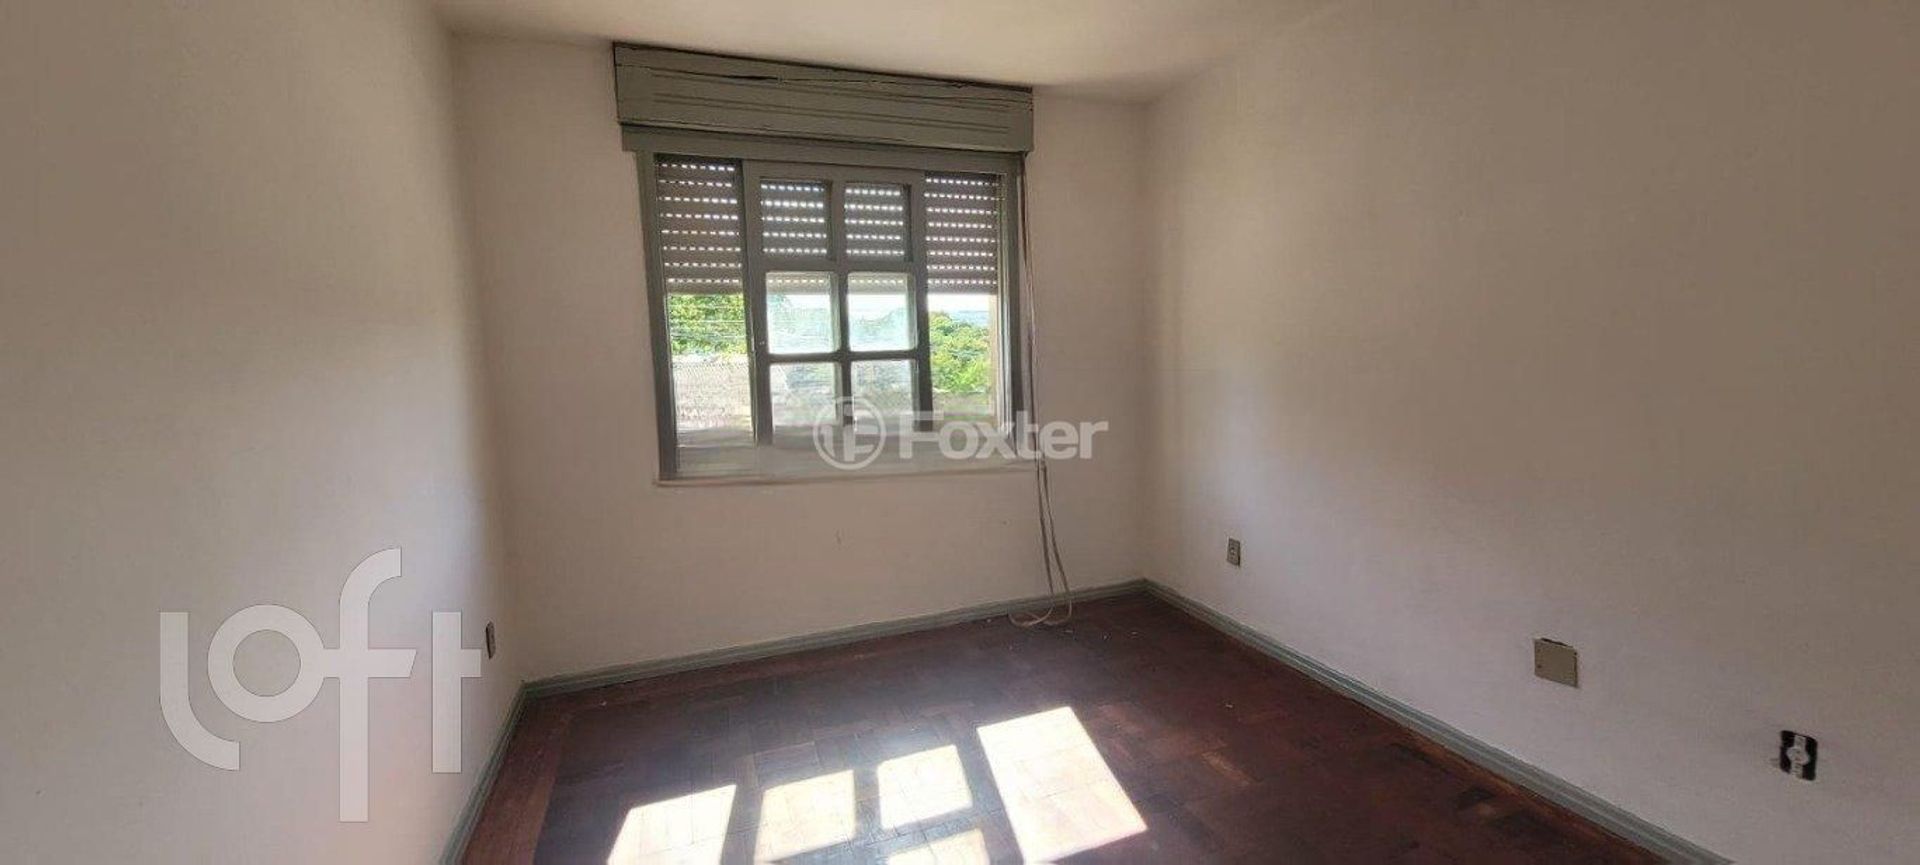 Apartamento 1 dorm à venda Avenida Professor Oscar Pereira, Glória - Porto Alegre